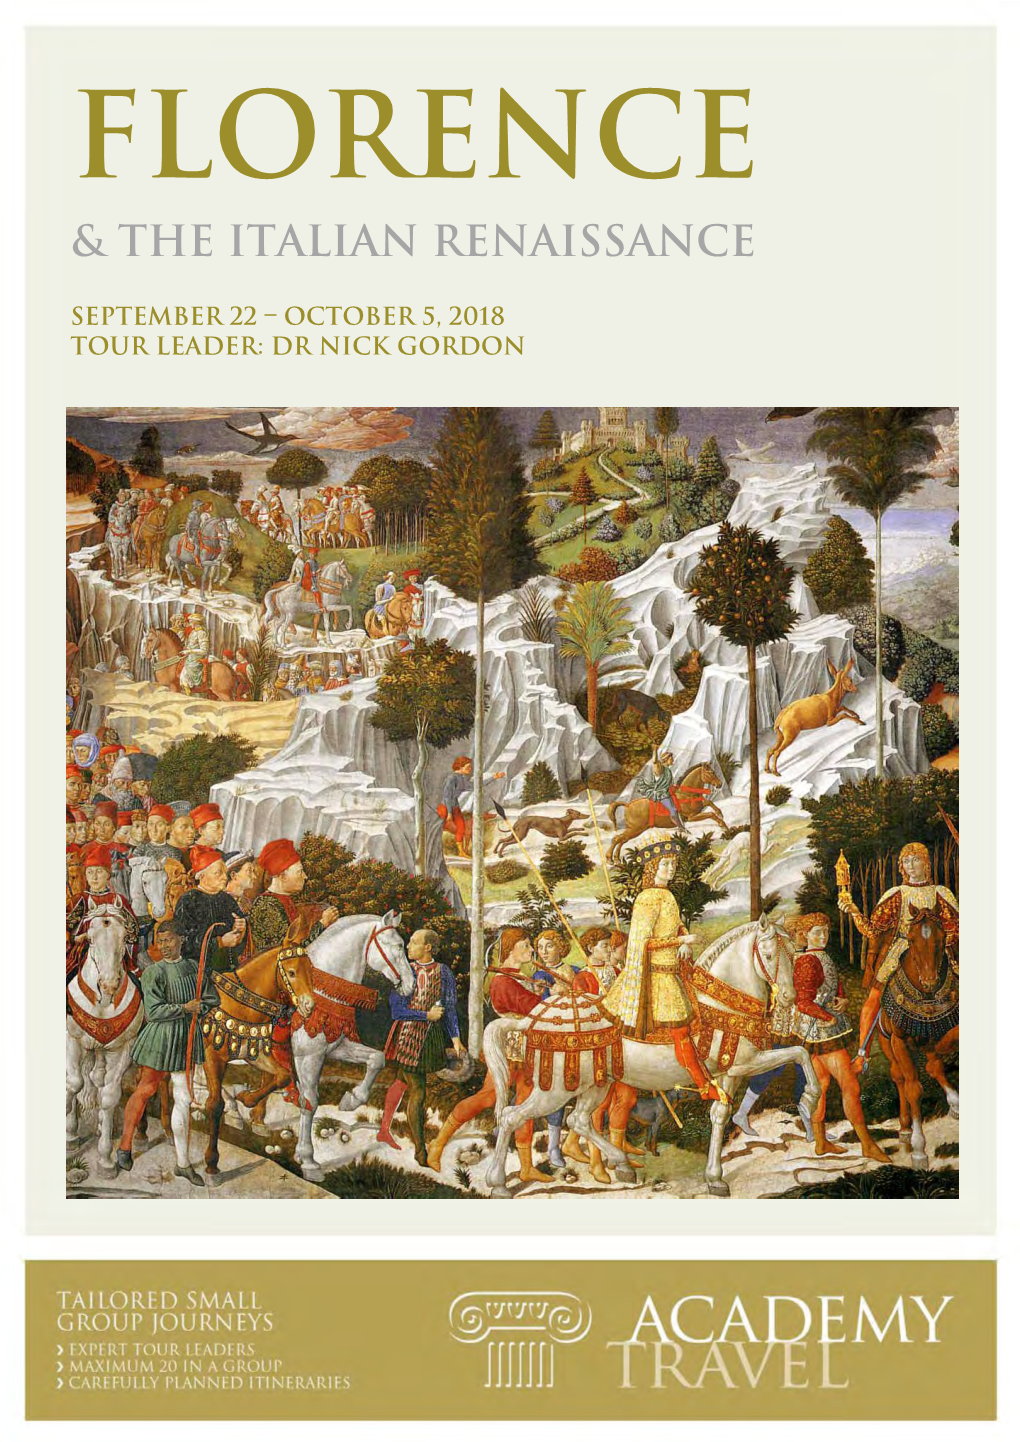 & the Italian Renaissance